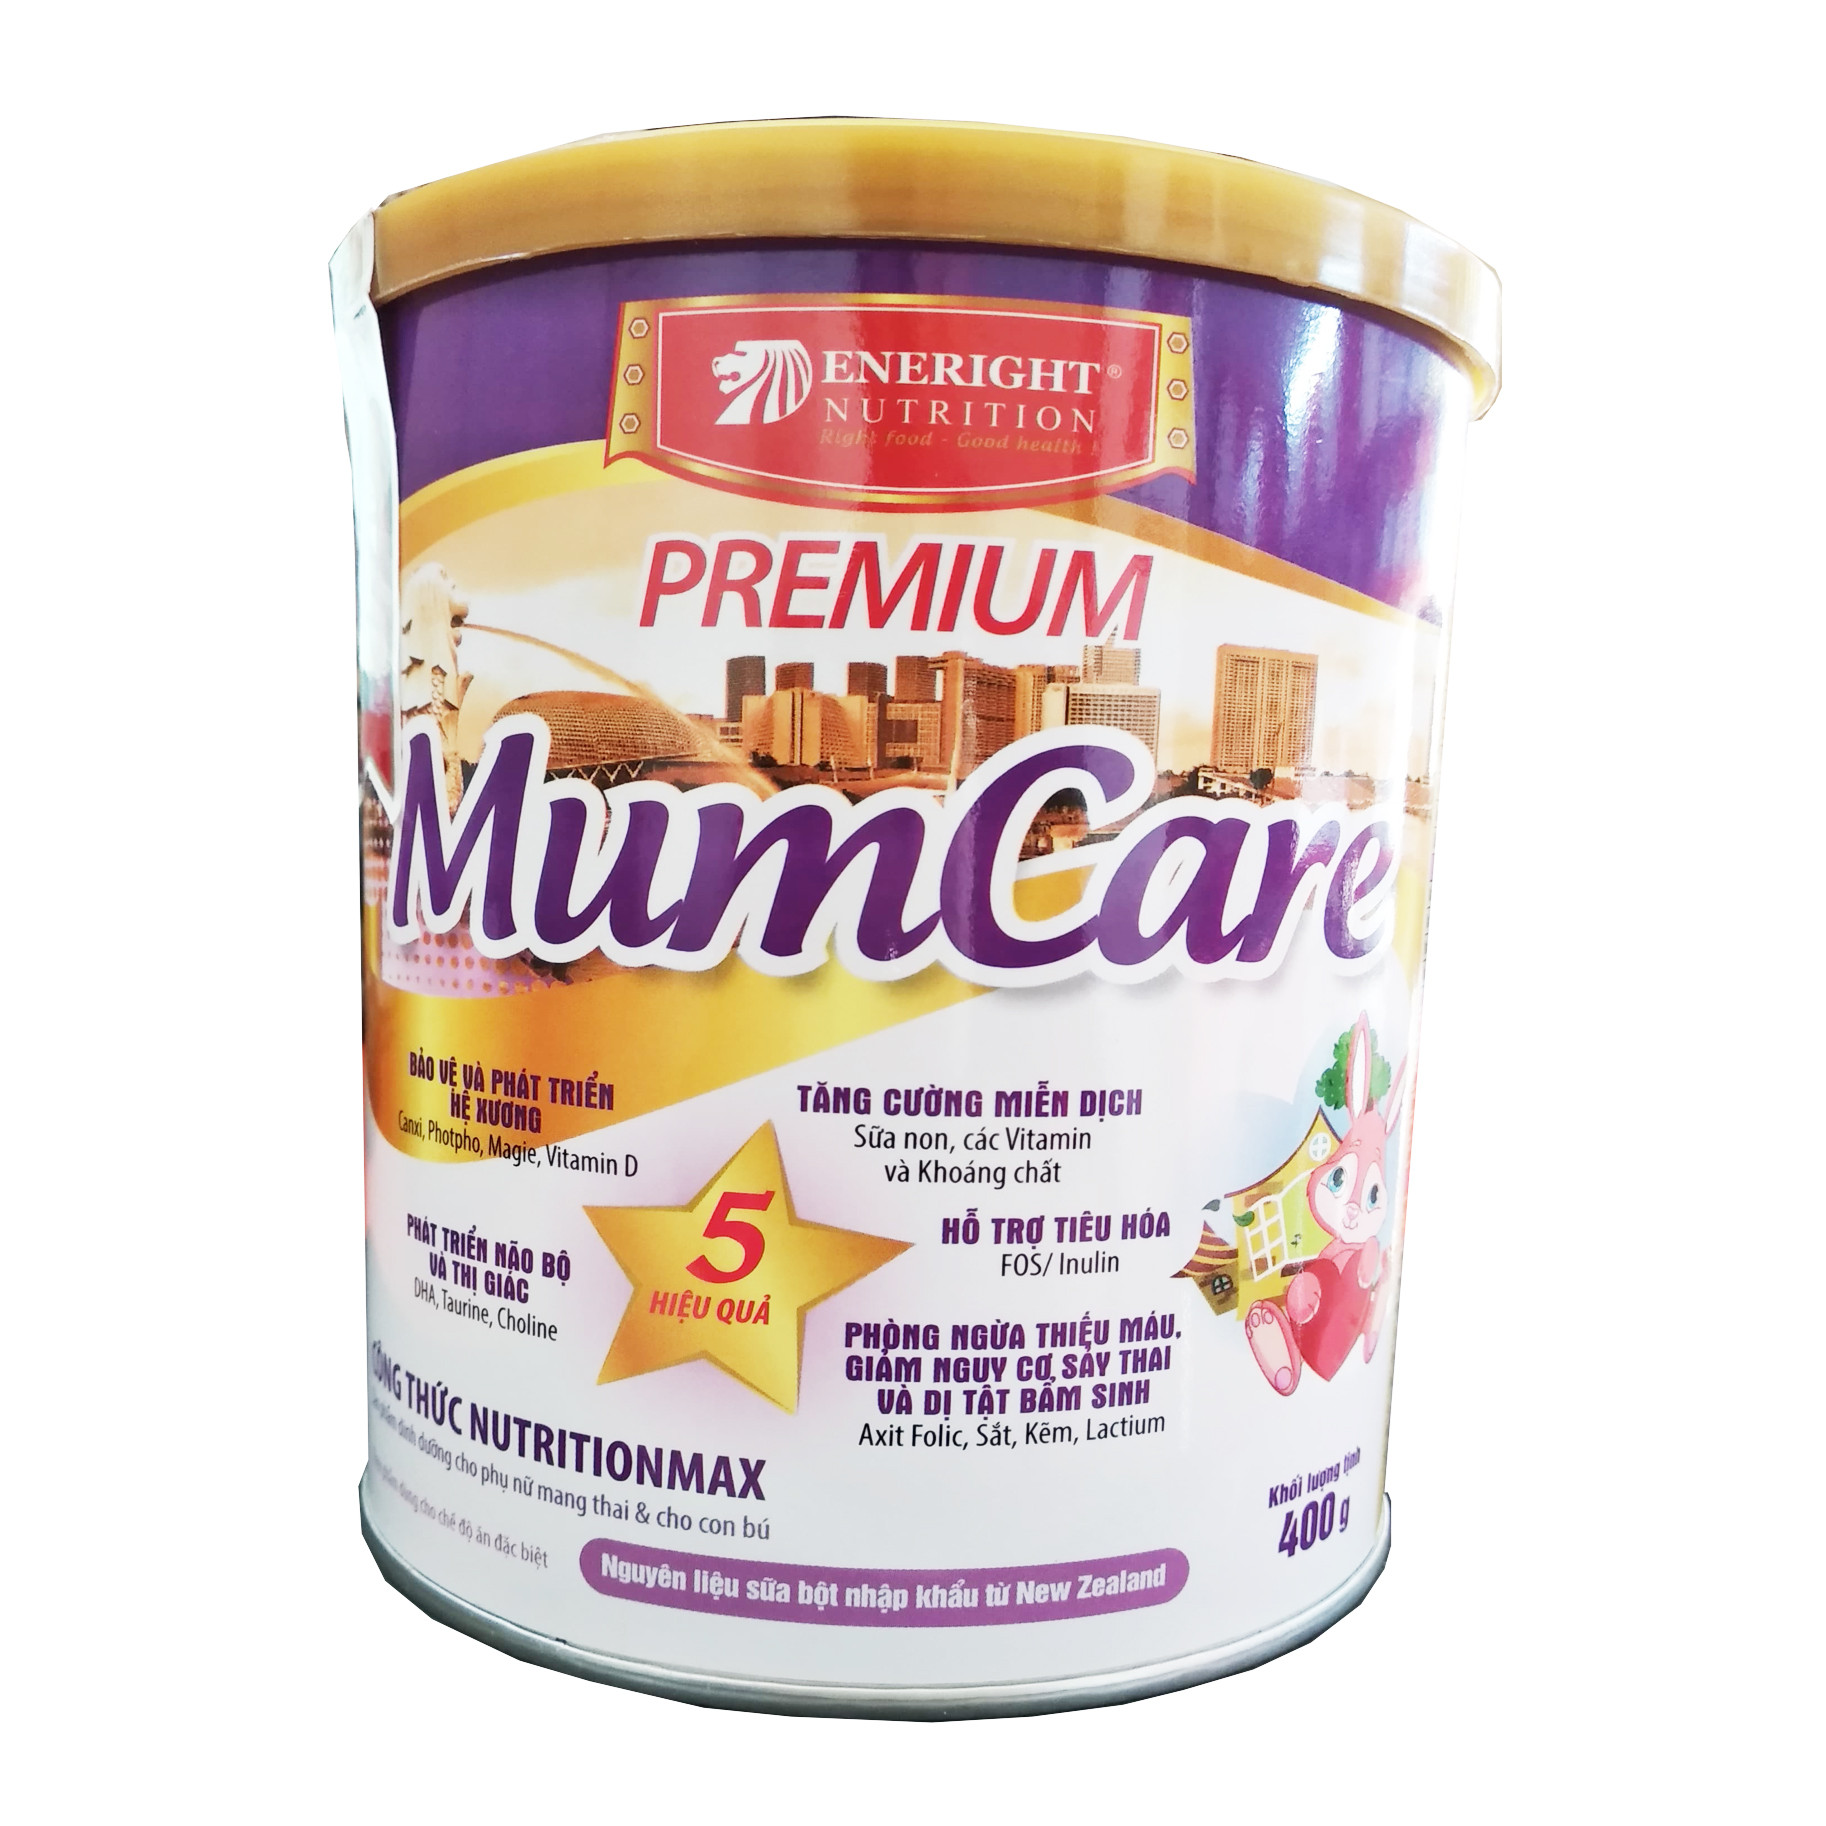 Sữa cho mẹ sau sinh cho con bú: Eneright Premium MumCare